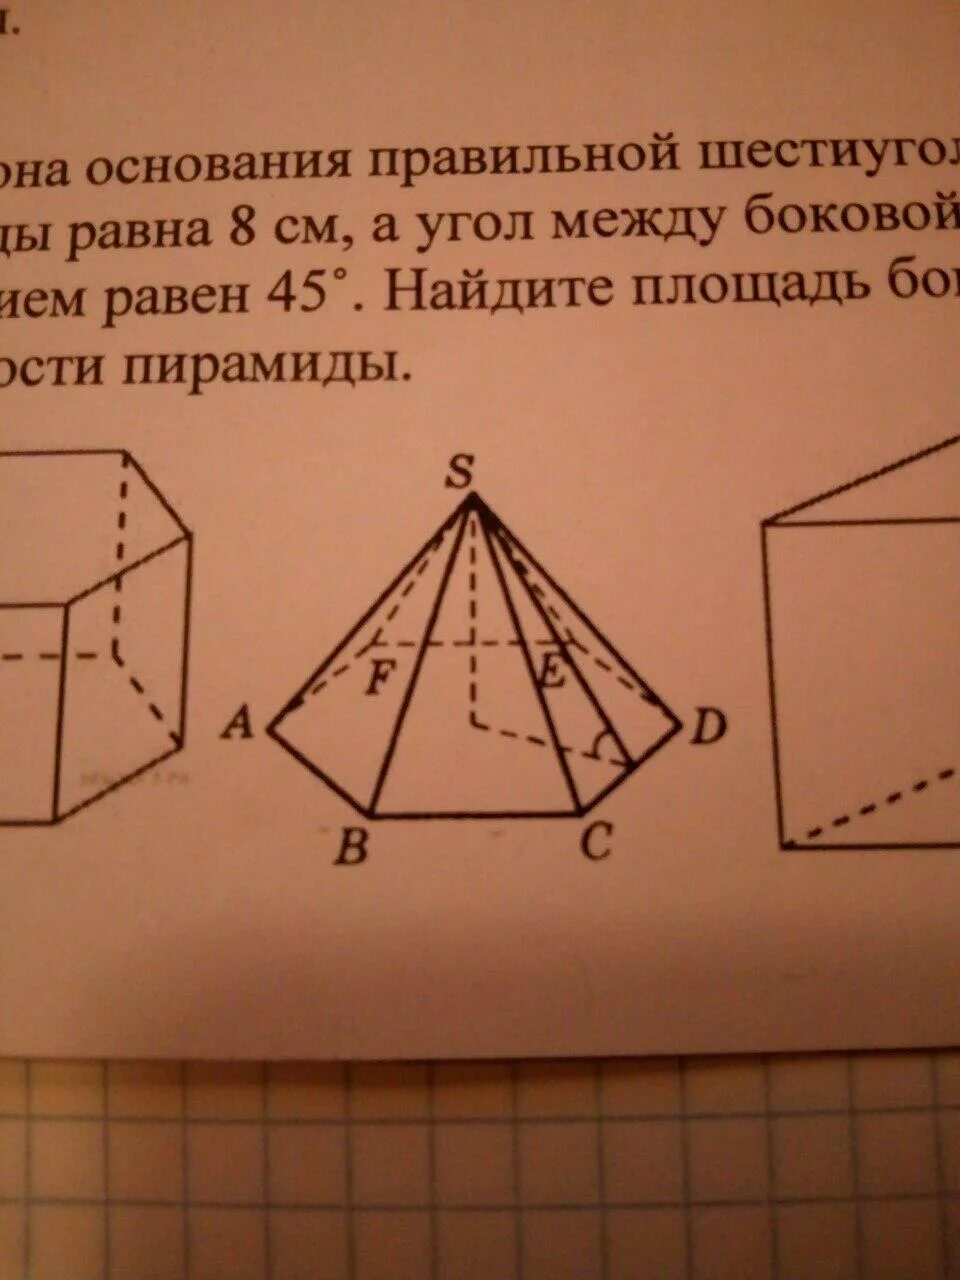 Сторона основания правильной шестиугольной пирамиды. Сторона основания правильной шестиугольной пирамиды равна. Сторону основания правильной шестиугольной пирамиды равна 8 а угол. Сторона основания правильной шестиугольной пирамиды равна 8.